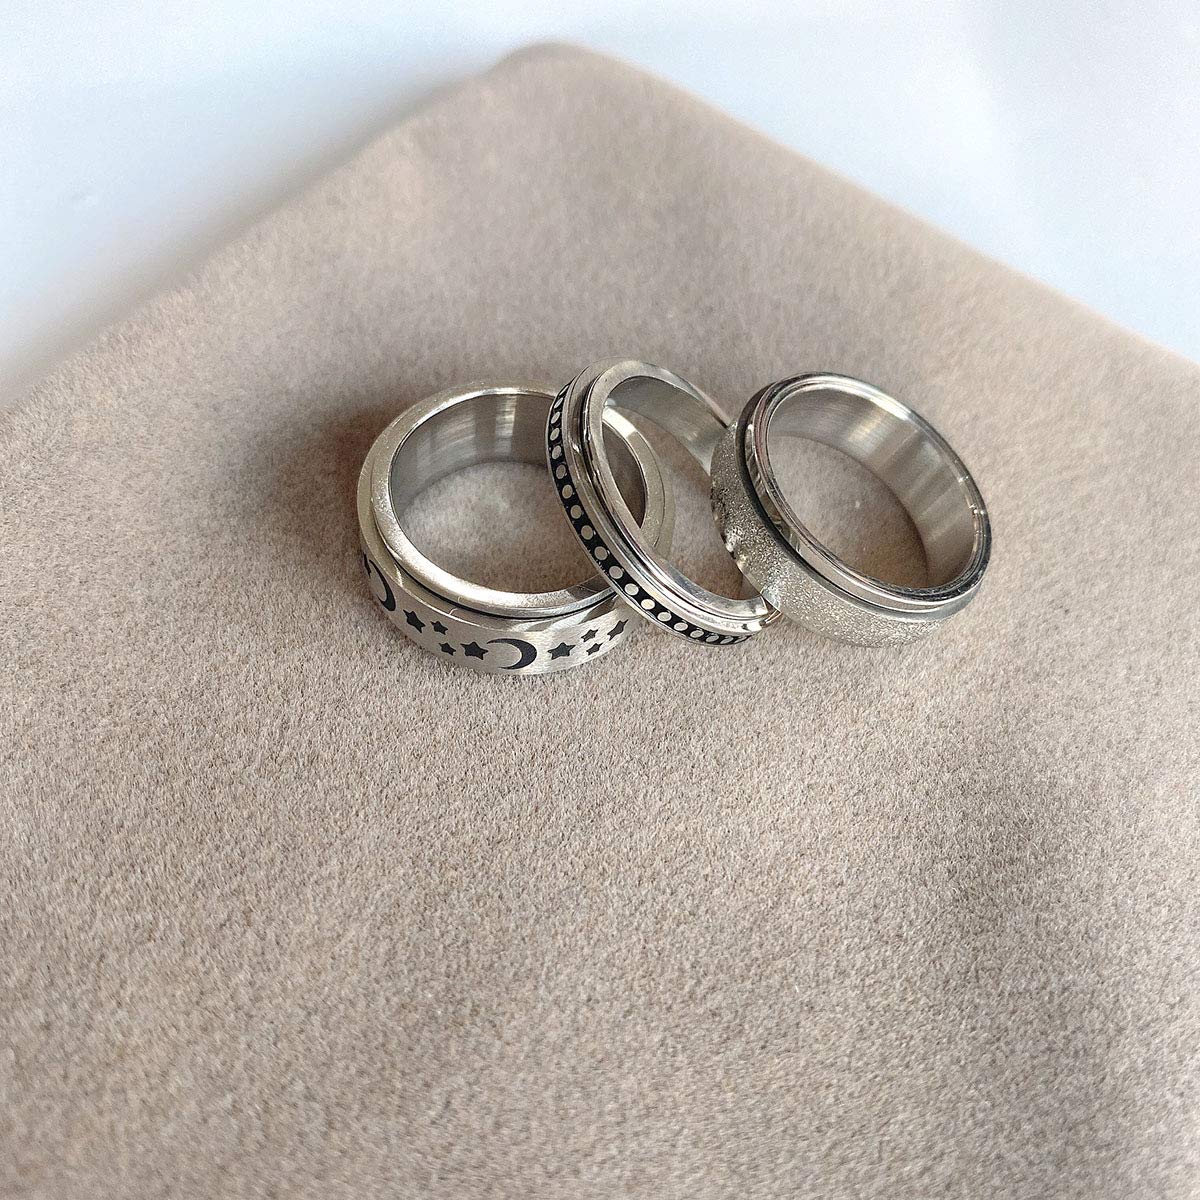 yfstyle 4pcs Plain Band Rings for Men Stainless Steel Rings for Men Wedding Ring Cool Spinner Rings for Men Black Stainless Steel Ring Set Anxiety